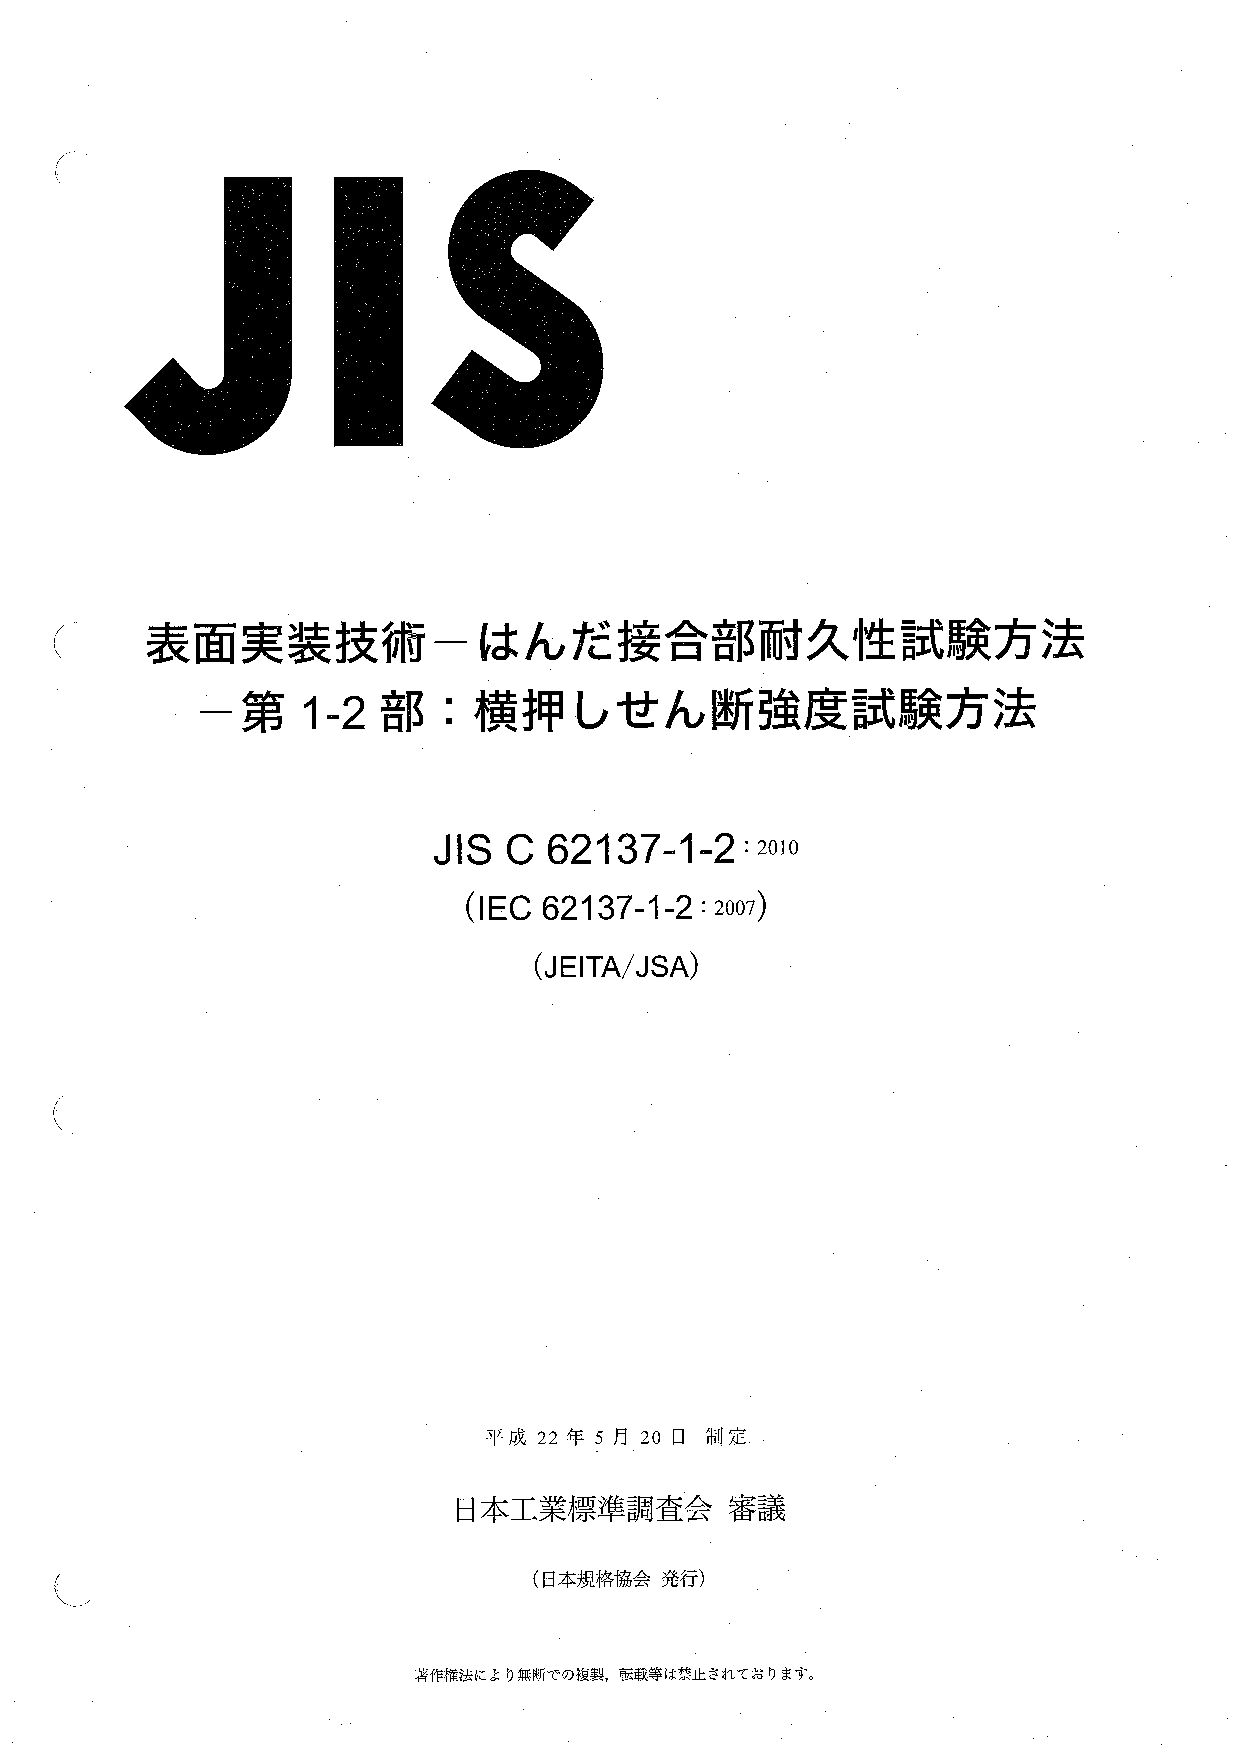 JIS C 62137-1-2:2010